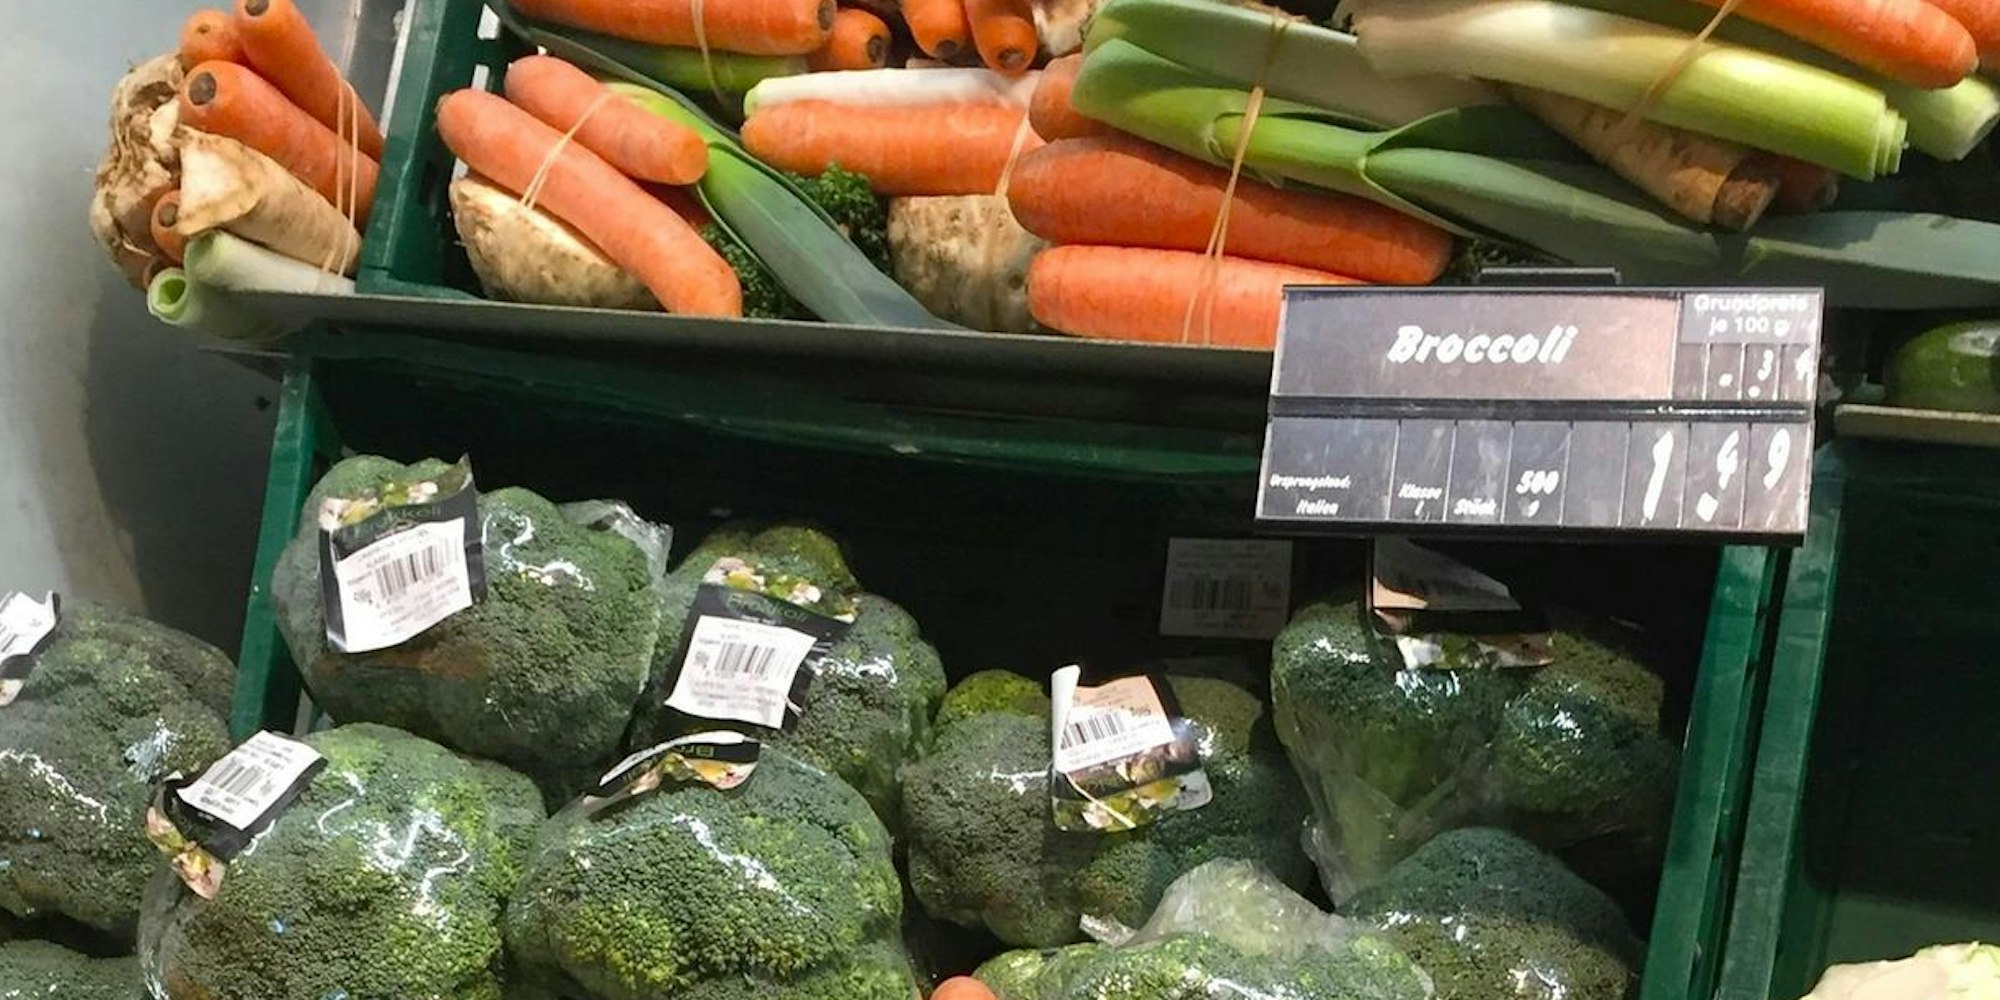 Gemüse im Supermarkt